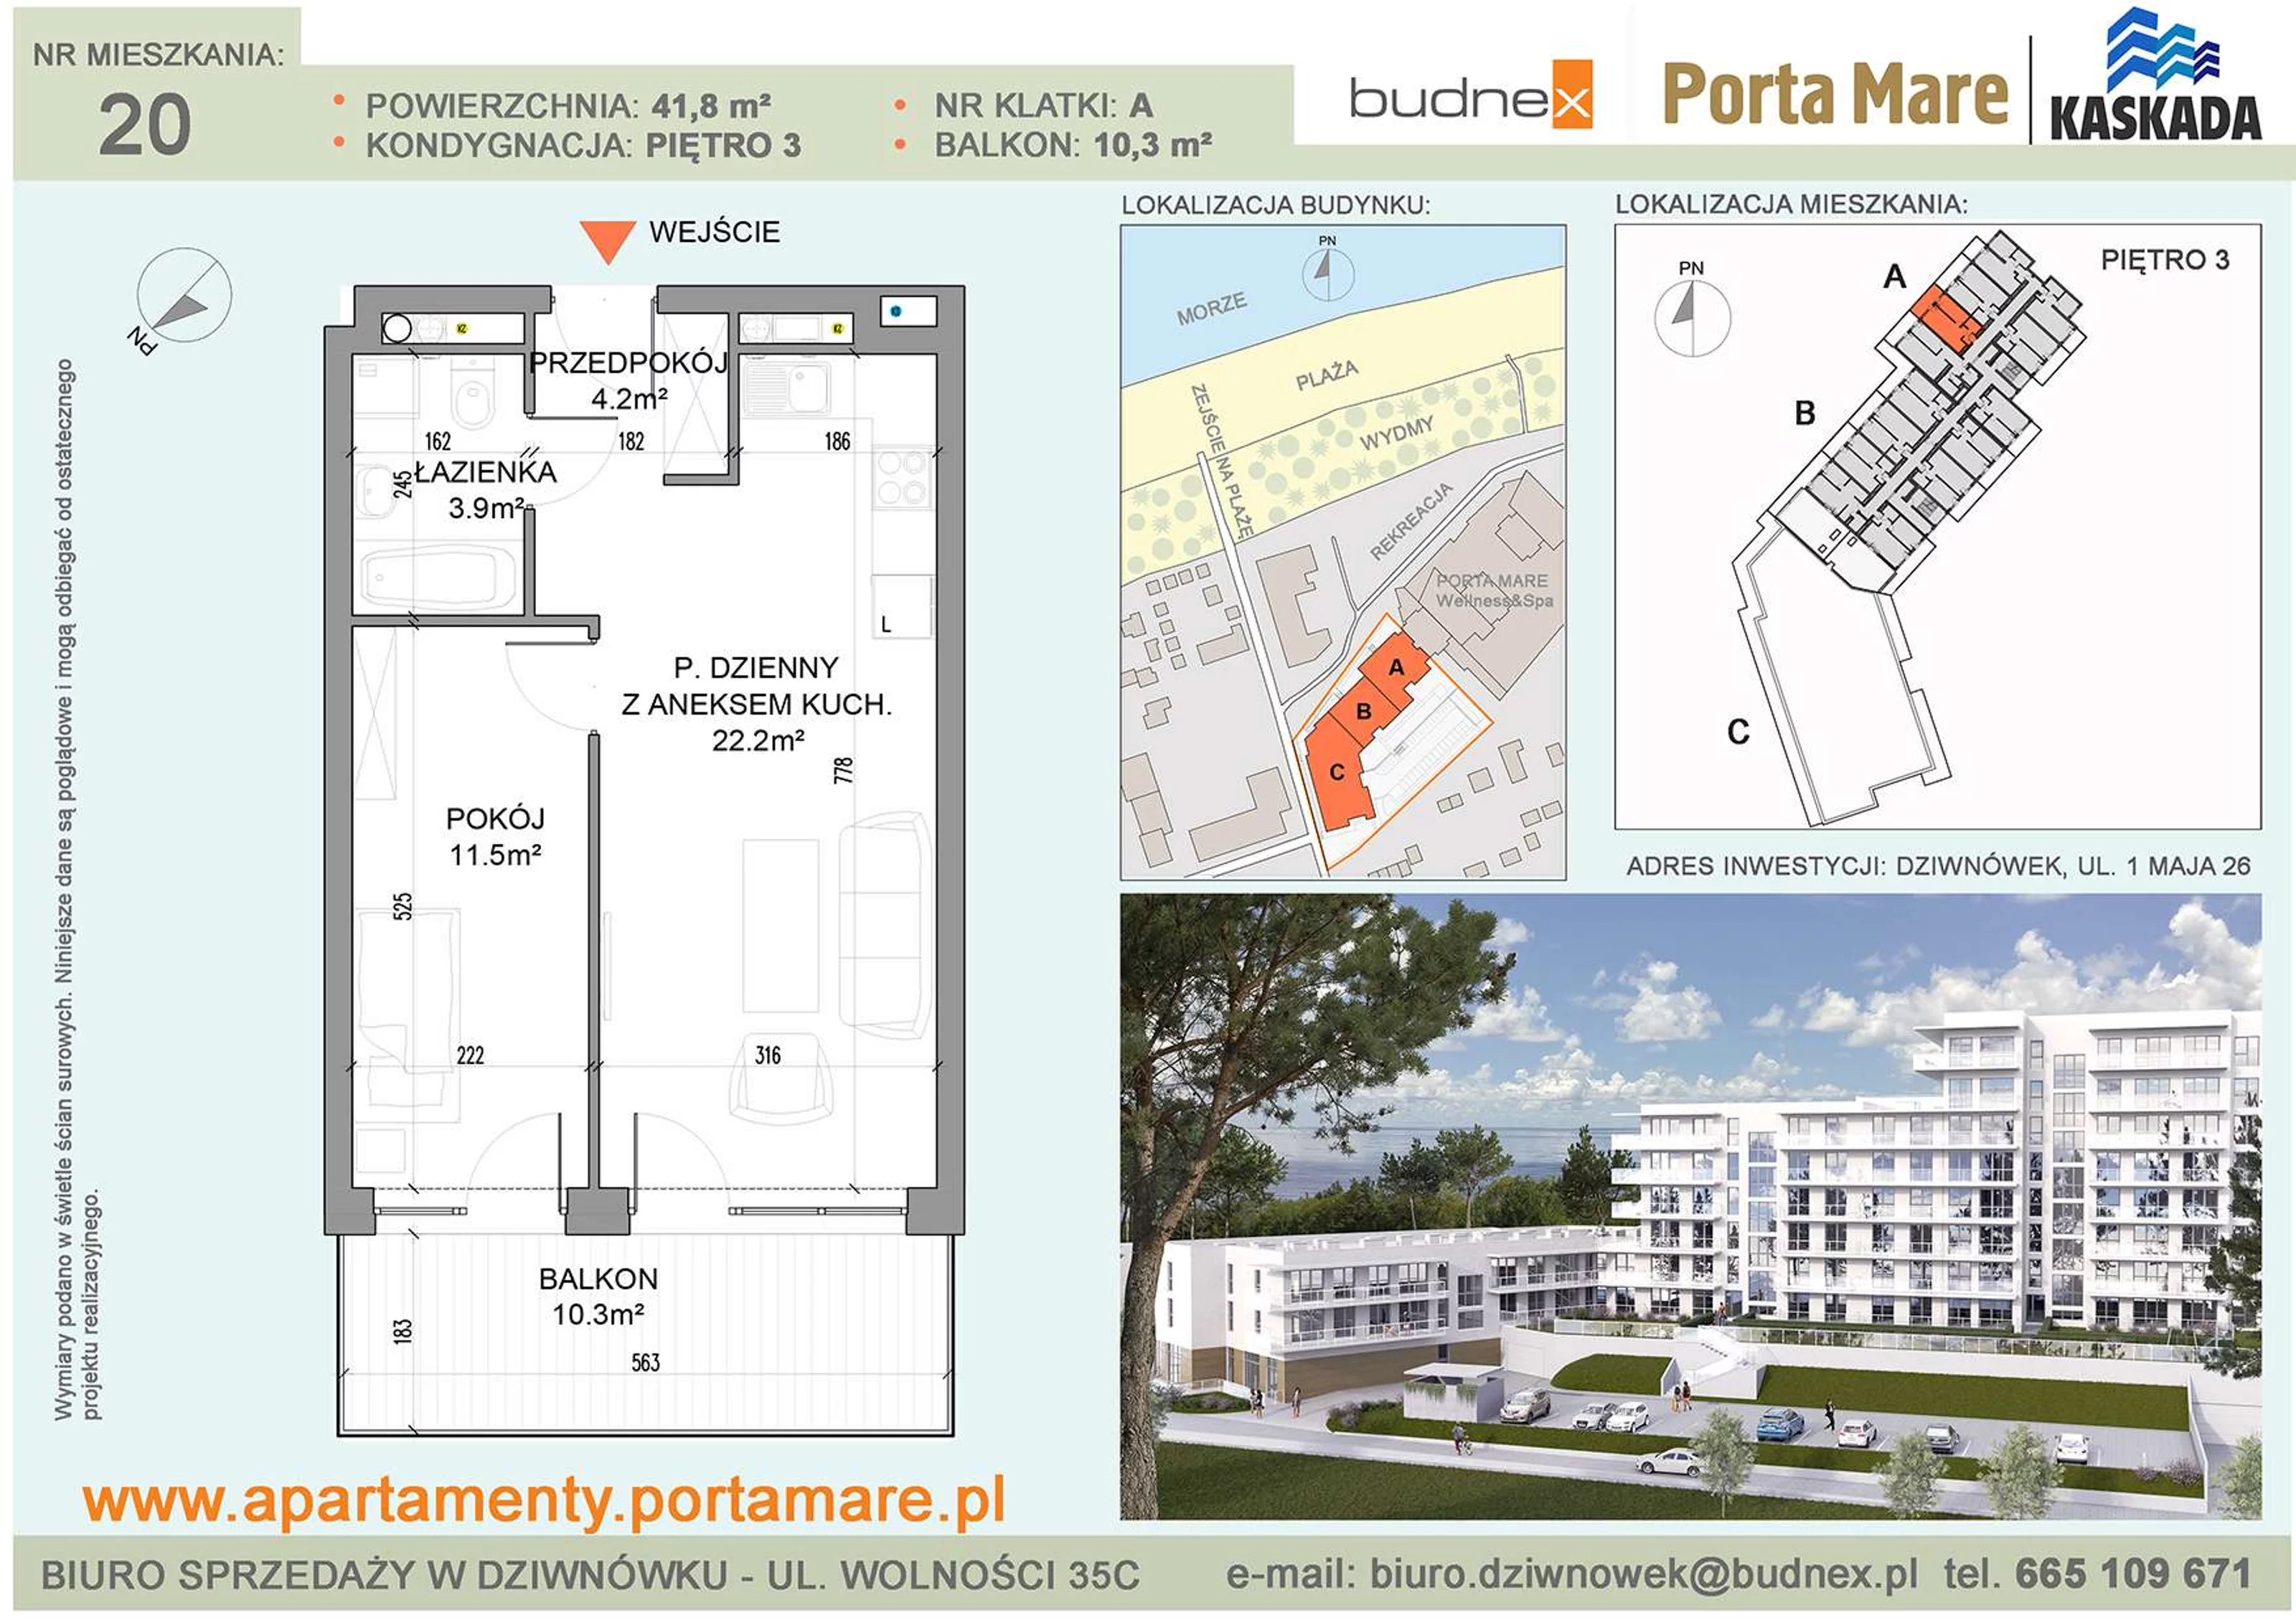 Apartament 41,80 m², piętro 3, oferta nr A/M20, Porta Mare Kaskada, Dziwnówek, ul. 1 Maja 26